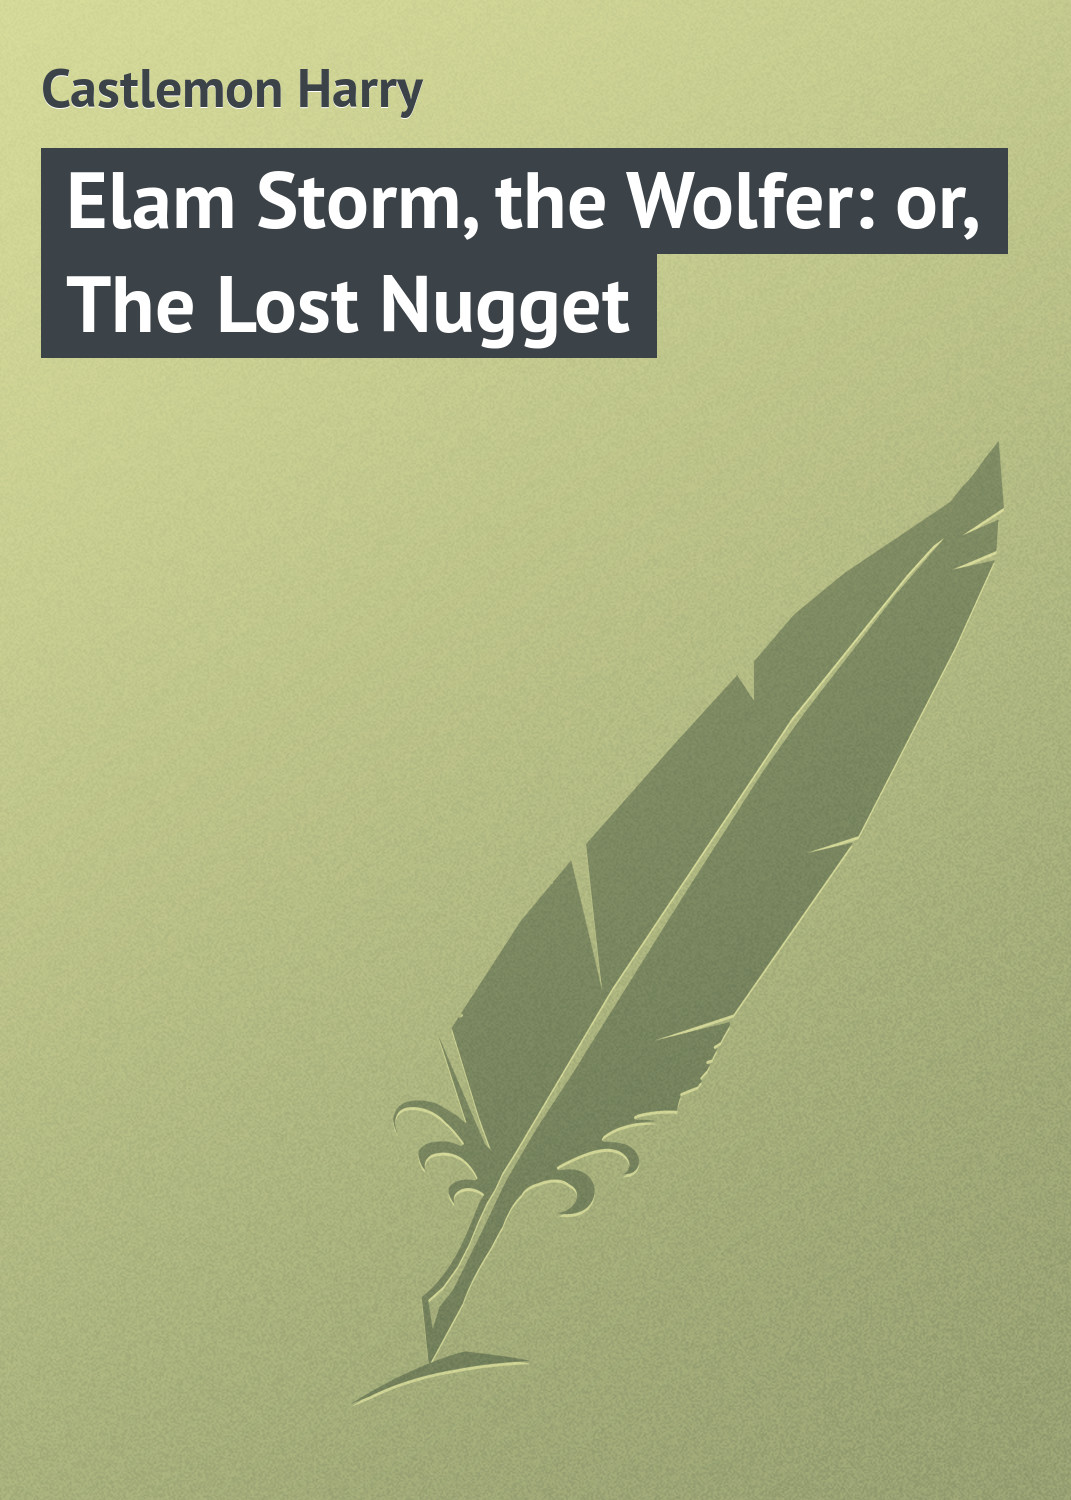 Книга Elam Storm, the Wolfer: or, The Lost Nugget из серии , созданная Harry Castlemon, может относится к жанру Приключения: прочее, Зарубежная классика. Стоимость электронной книги Elam Storm, the Wolfer: or, The Lost Nugget с идентификатором 23144571 составляет 5.99 руб.